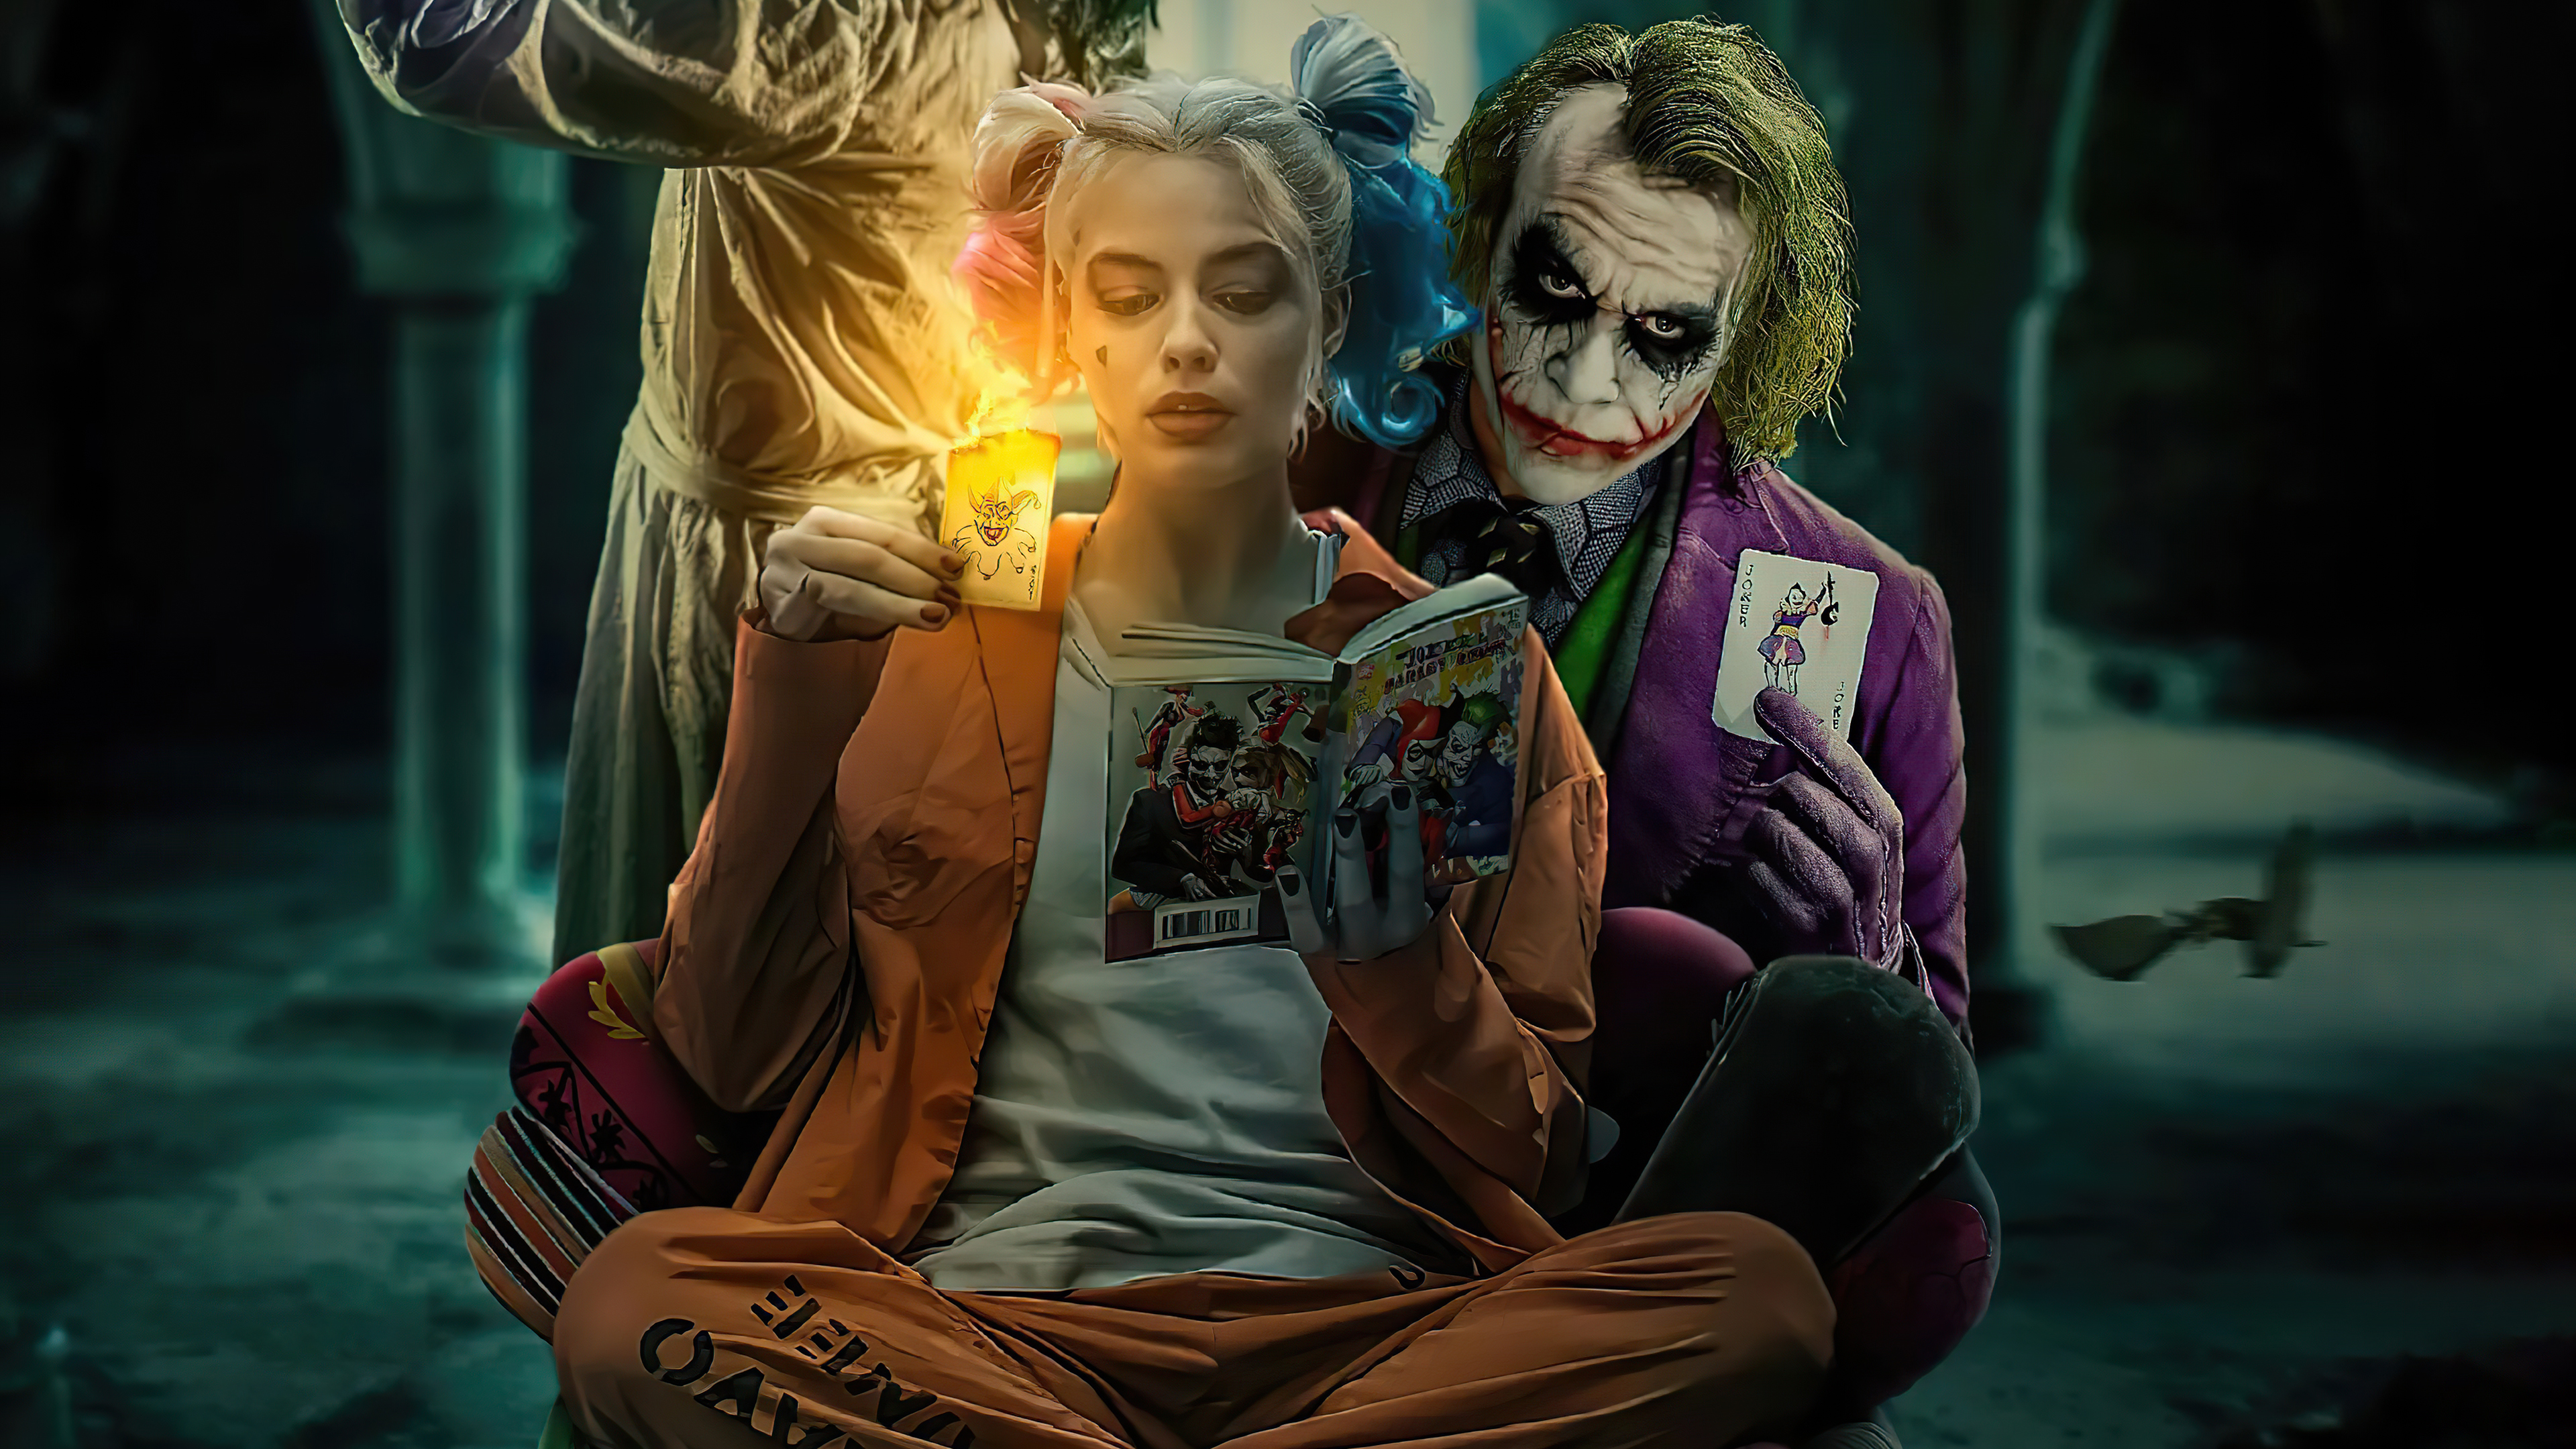 Joker and Harley Quinn wallpaper by ArkhamNatic on DeviantArt